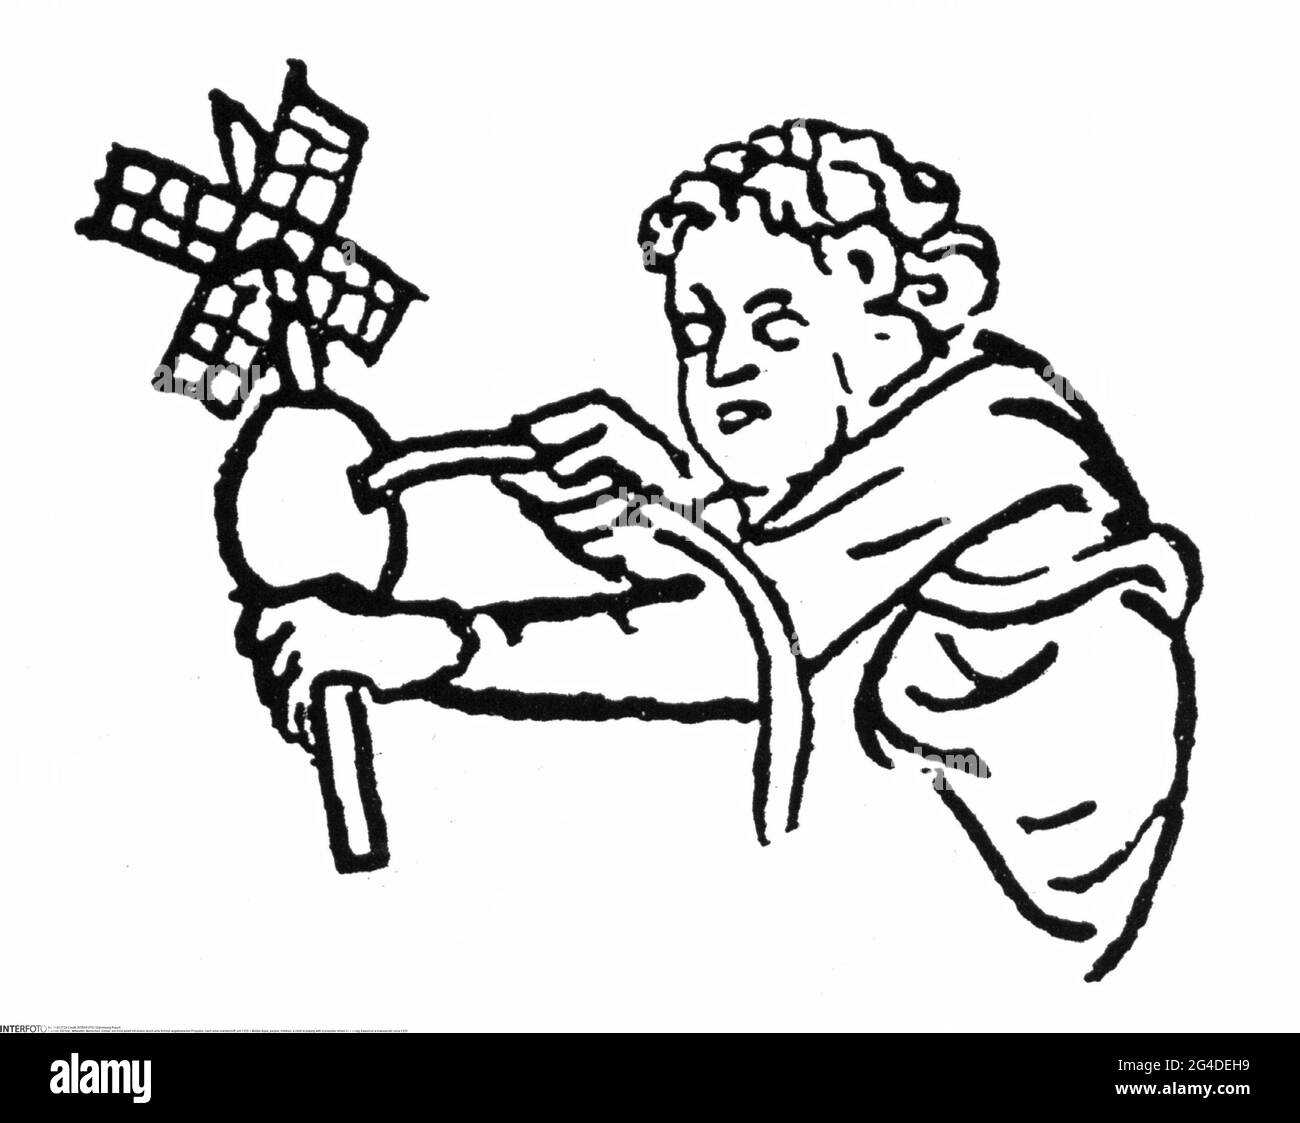 Mittelalter, Menschen, Kinder, ein Kind spielt mit einem Propeller, der von einer Schnur angetrieben wird, das URHEBERRECHT VON ARTIST's MUSS NICHT FREIGEGEBEN WERDEN Stockfoto